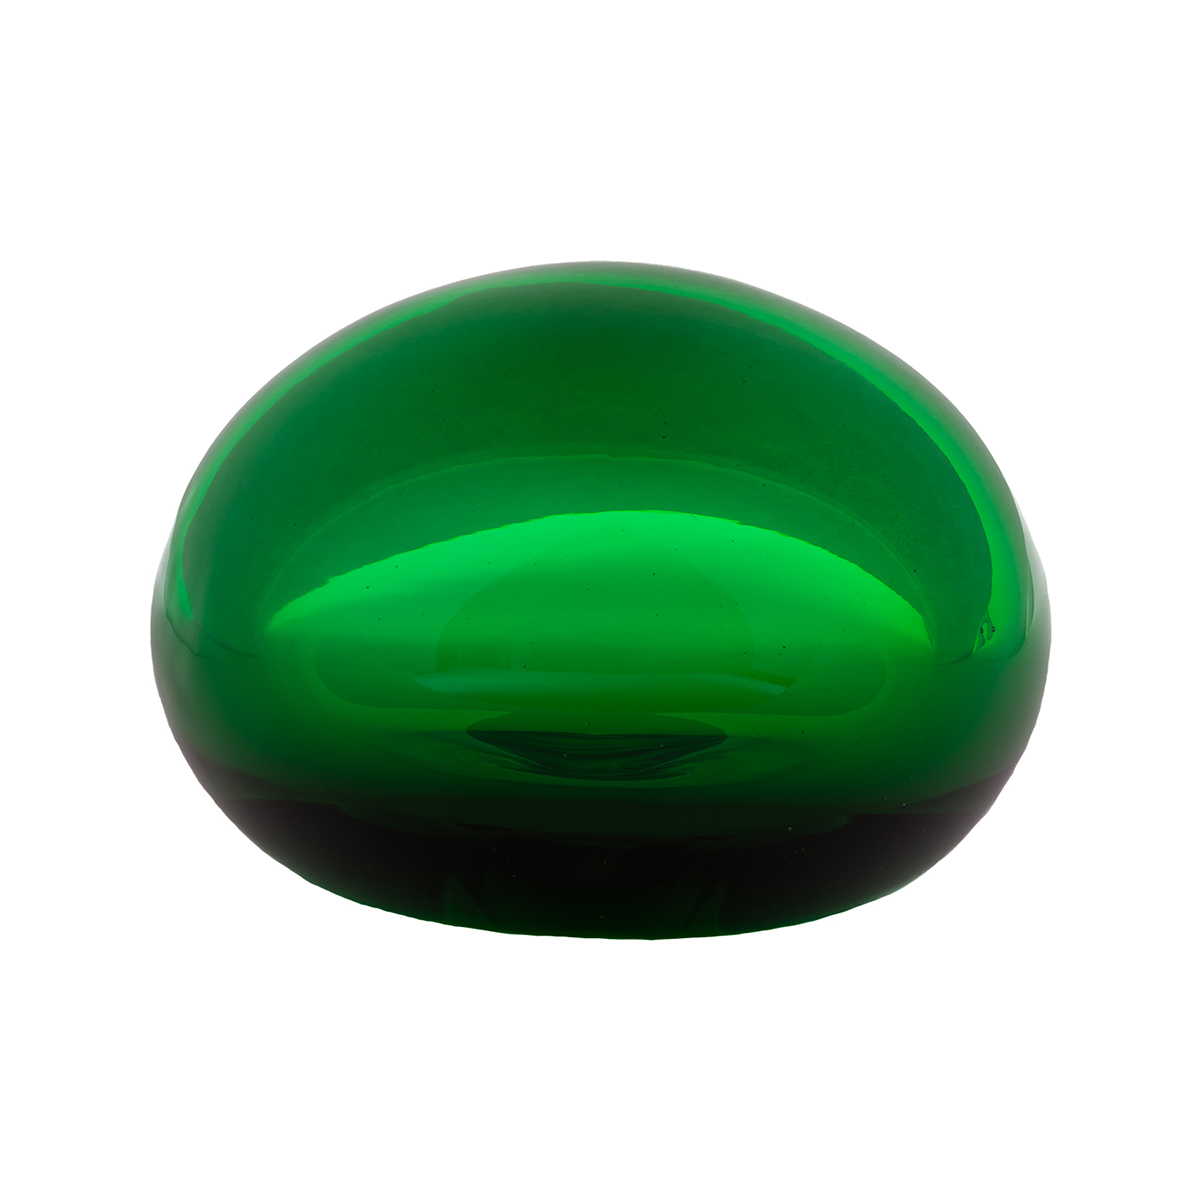 press-papier-green-murano-glass-design-luxury-giberto